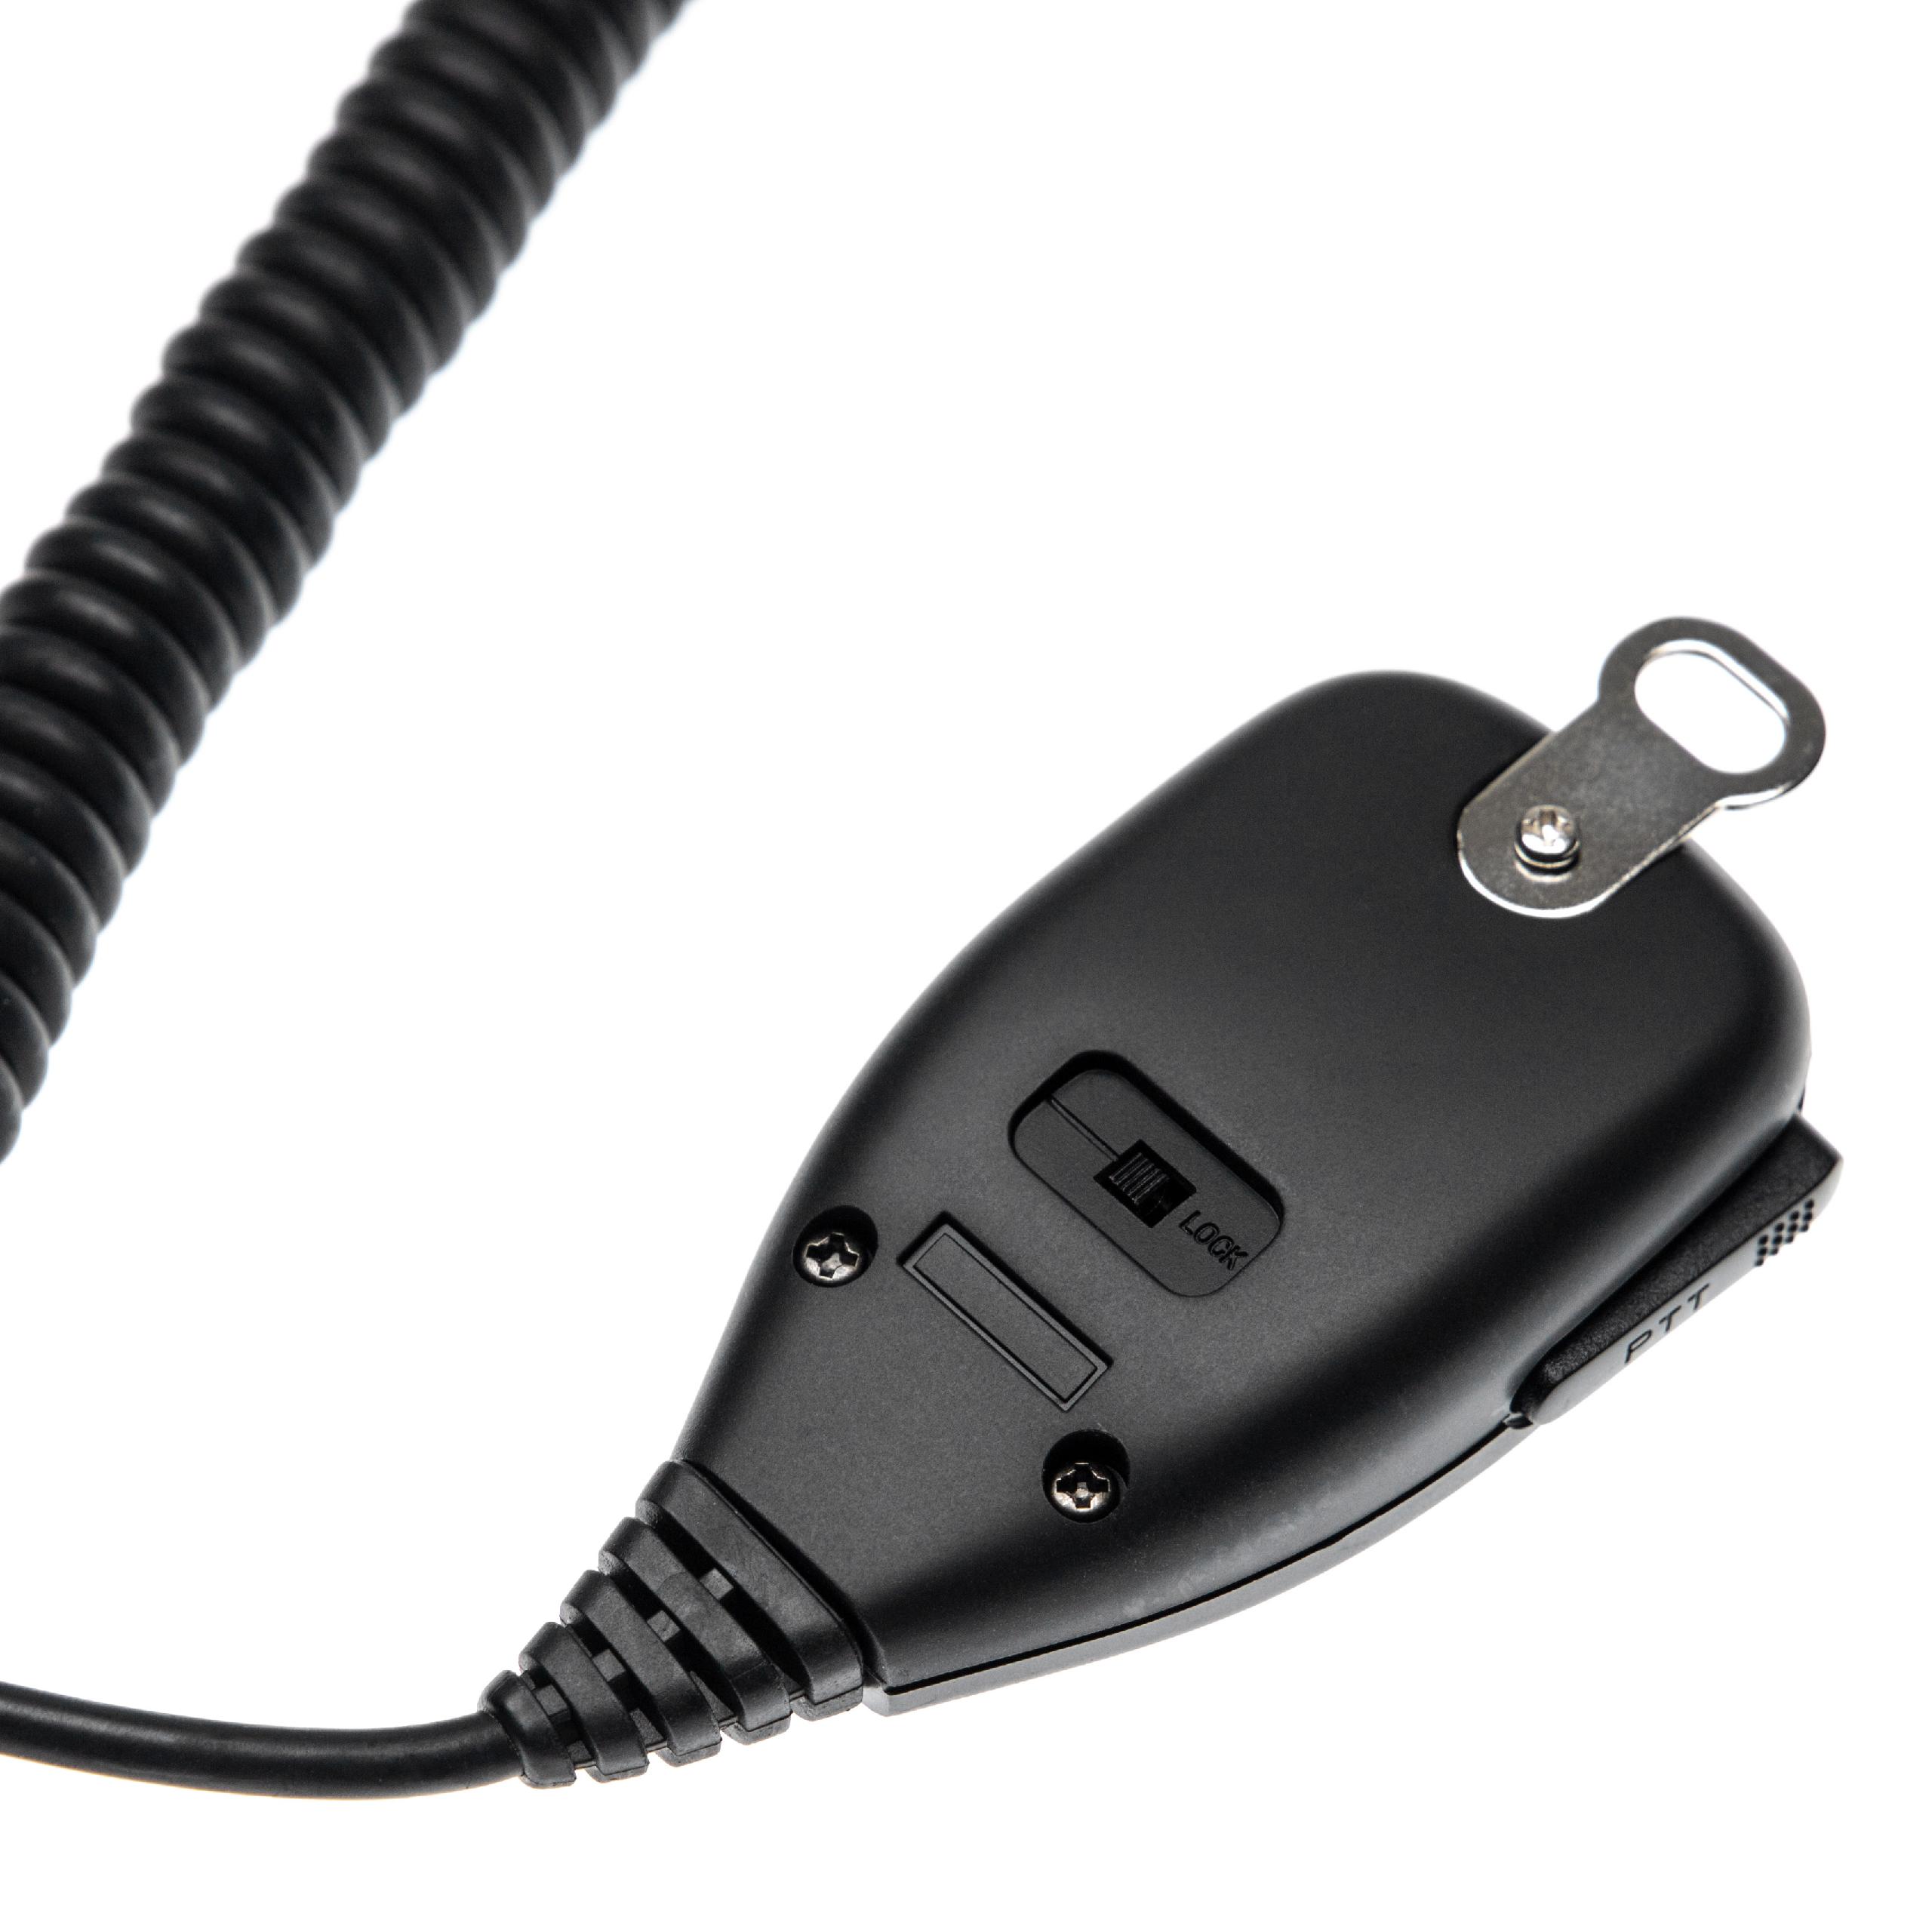 vhbw microfono altoparlante compatibile con TK-7100 dispositivo radio